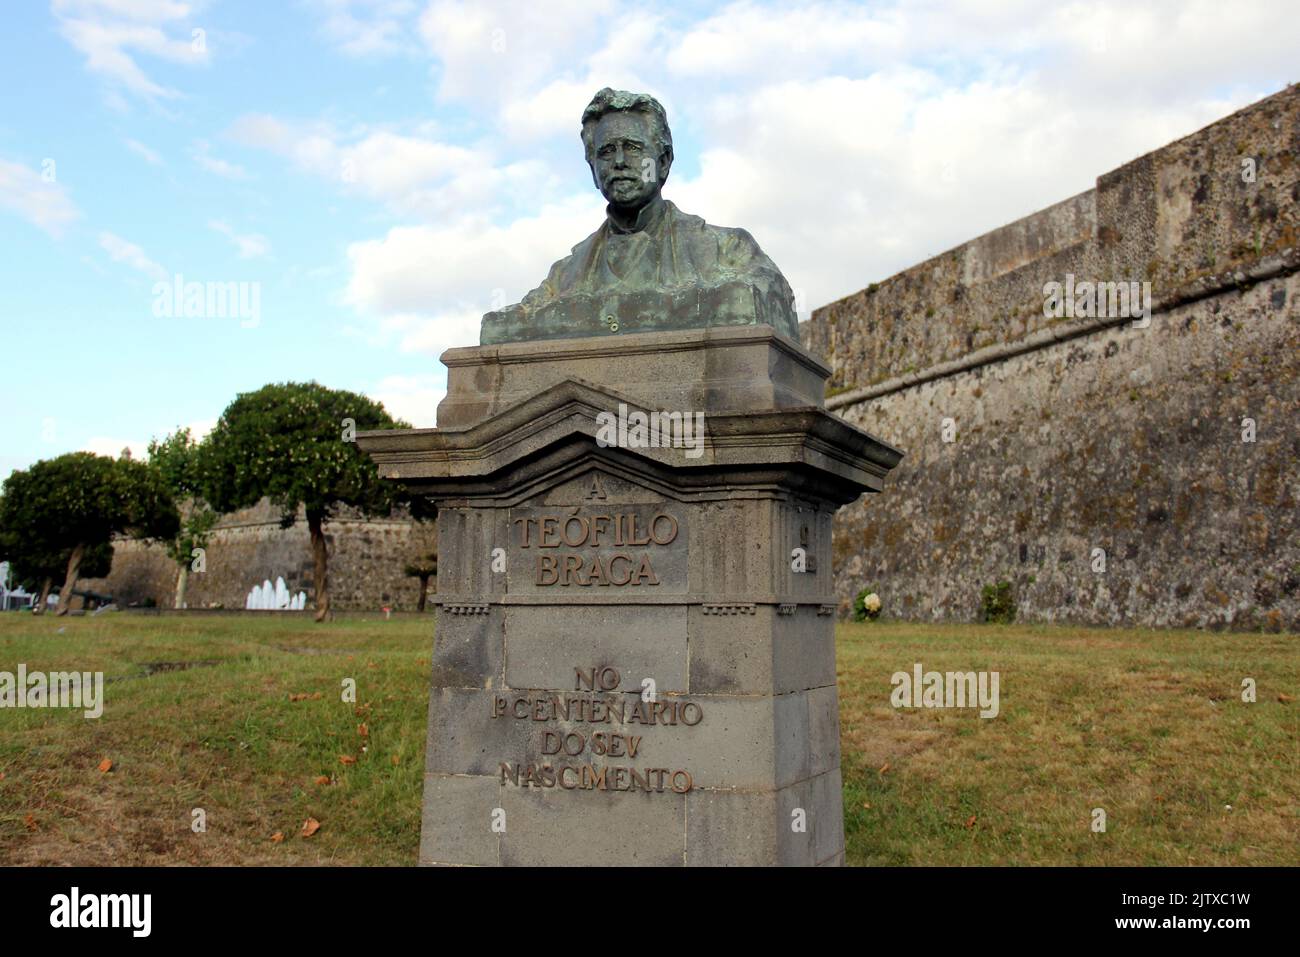 Monument to Teofilo Braga, president of the Portuguese Republic in 1915, Ponta Delgada, Sao Miguel Azores, Portugal Stock Photo